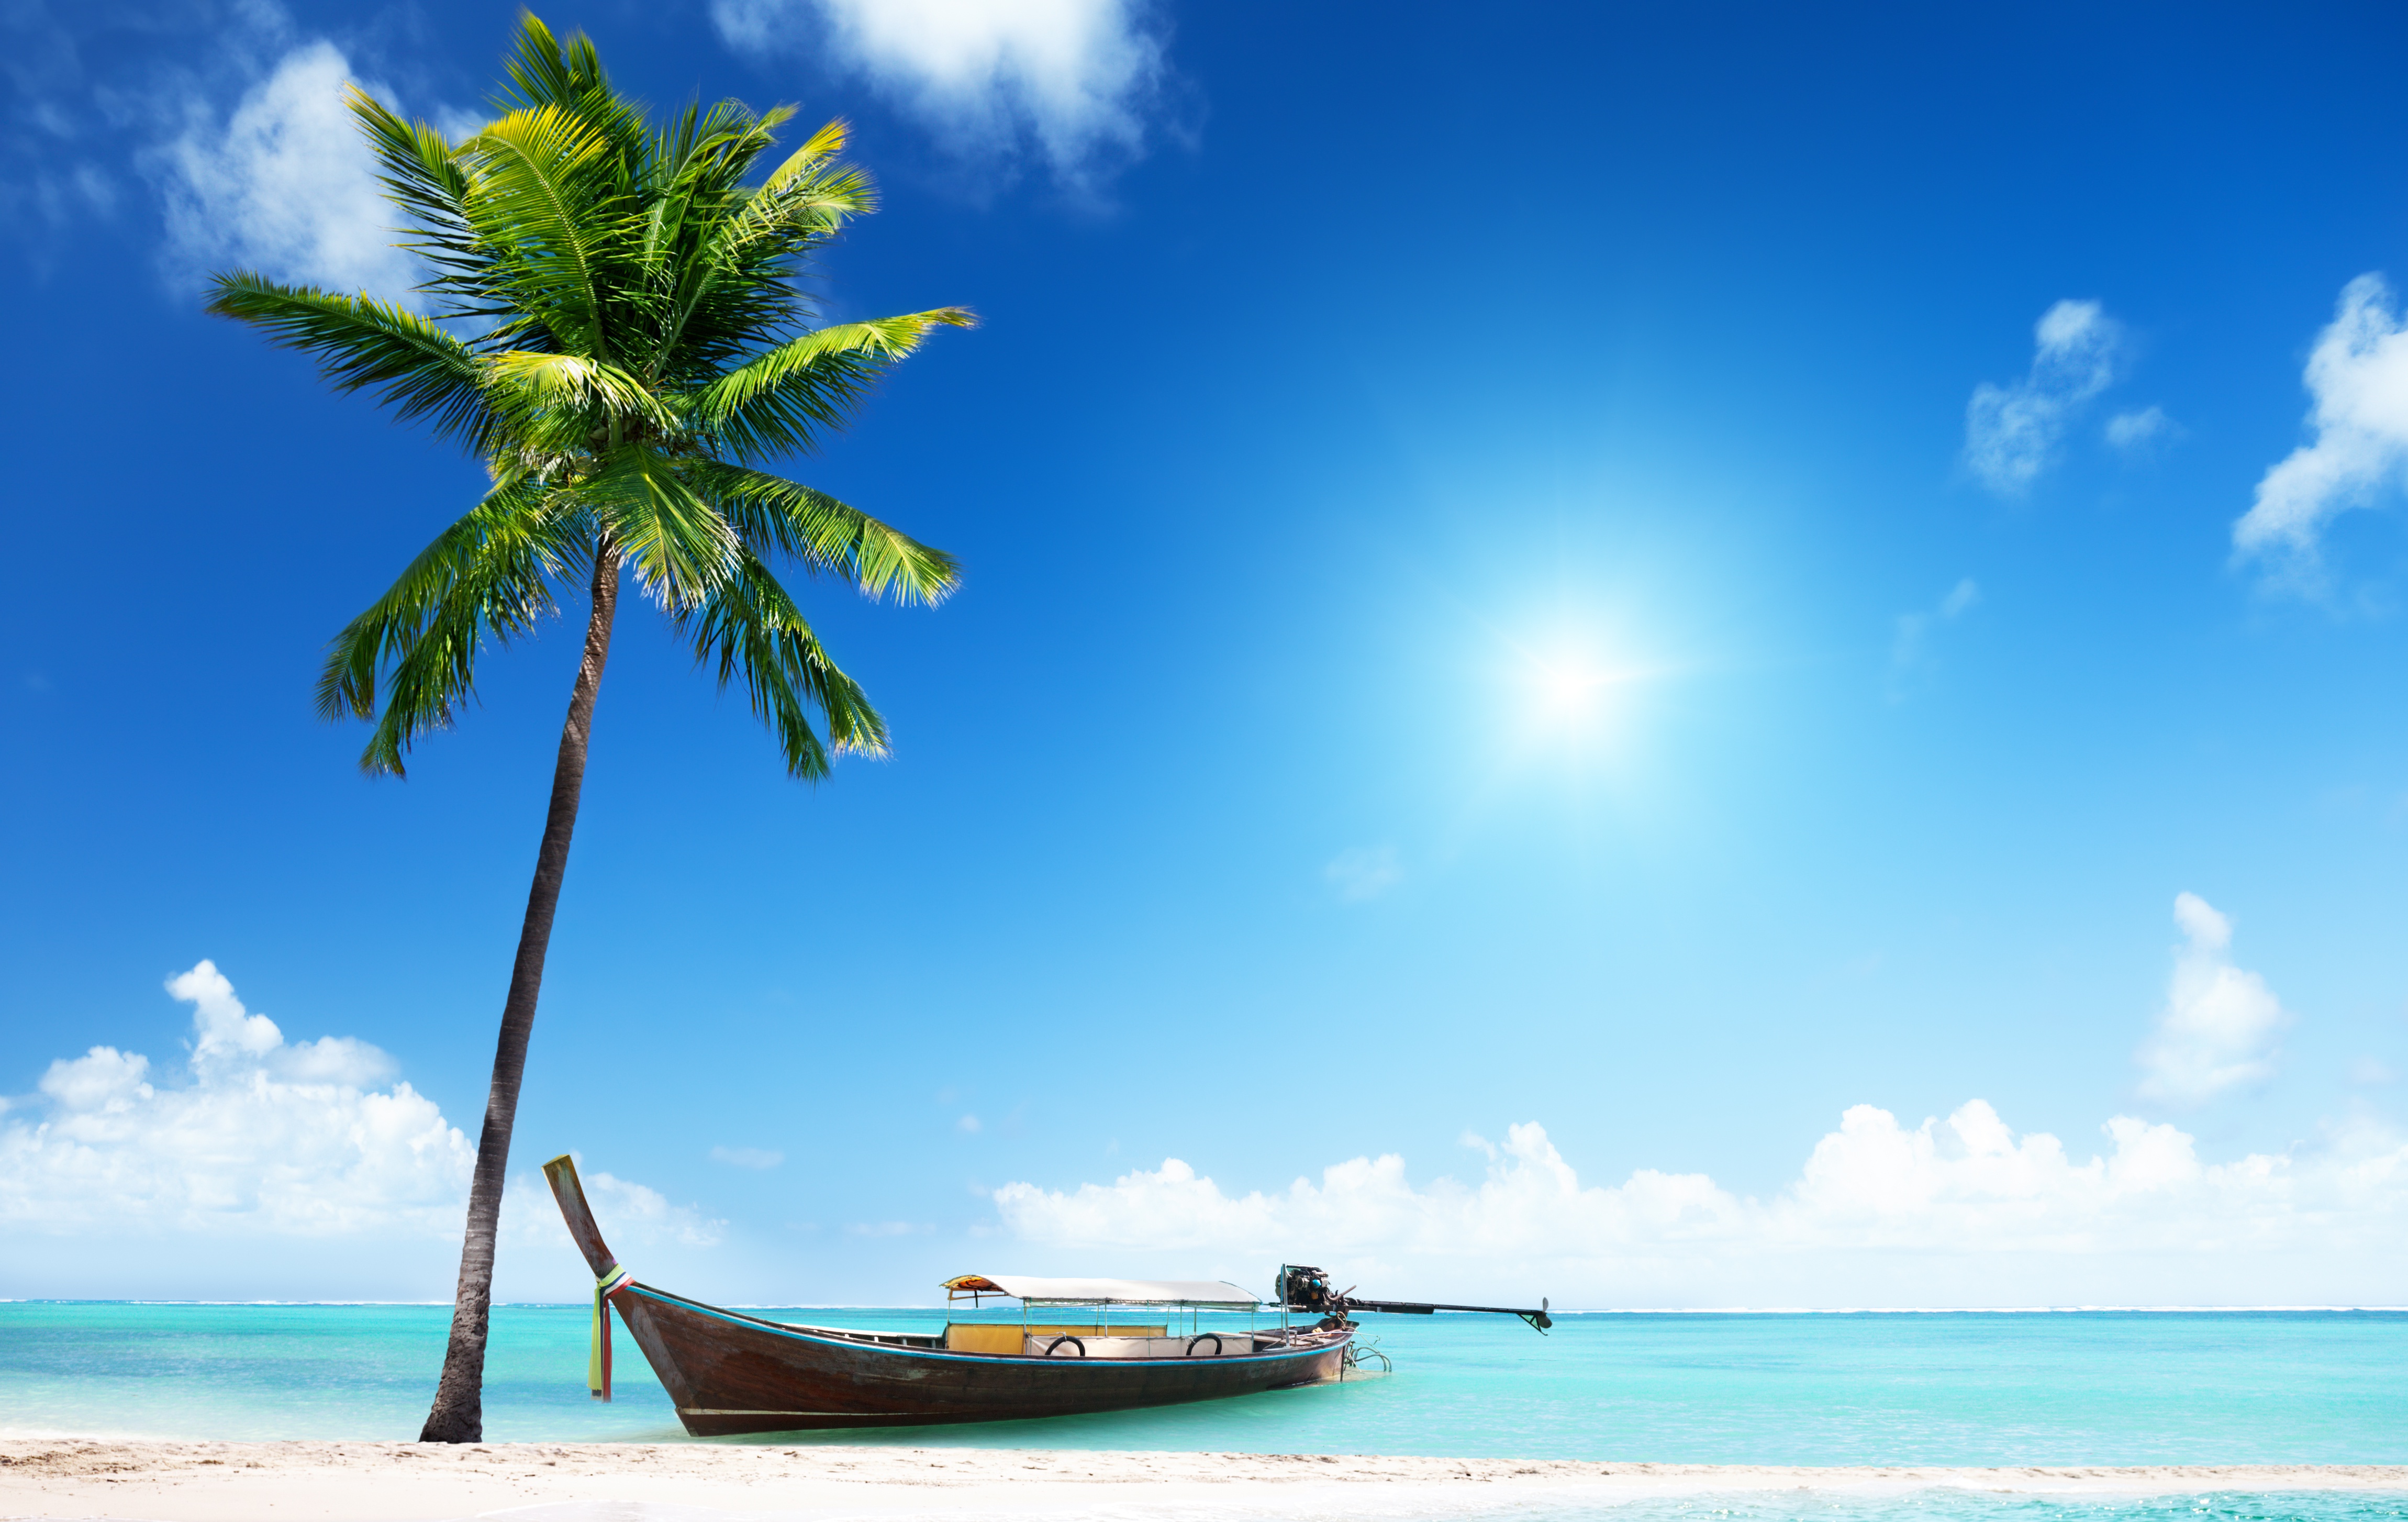 Beach tree. Море пляж. Море солнце пальмы. Море пляж пальмы. Пляж с пальмами.